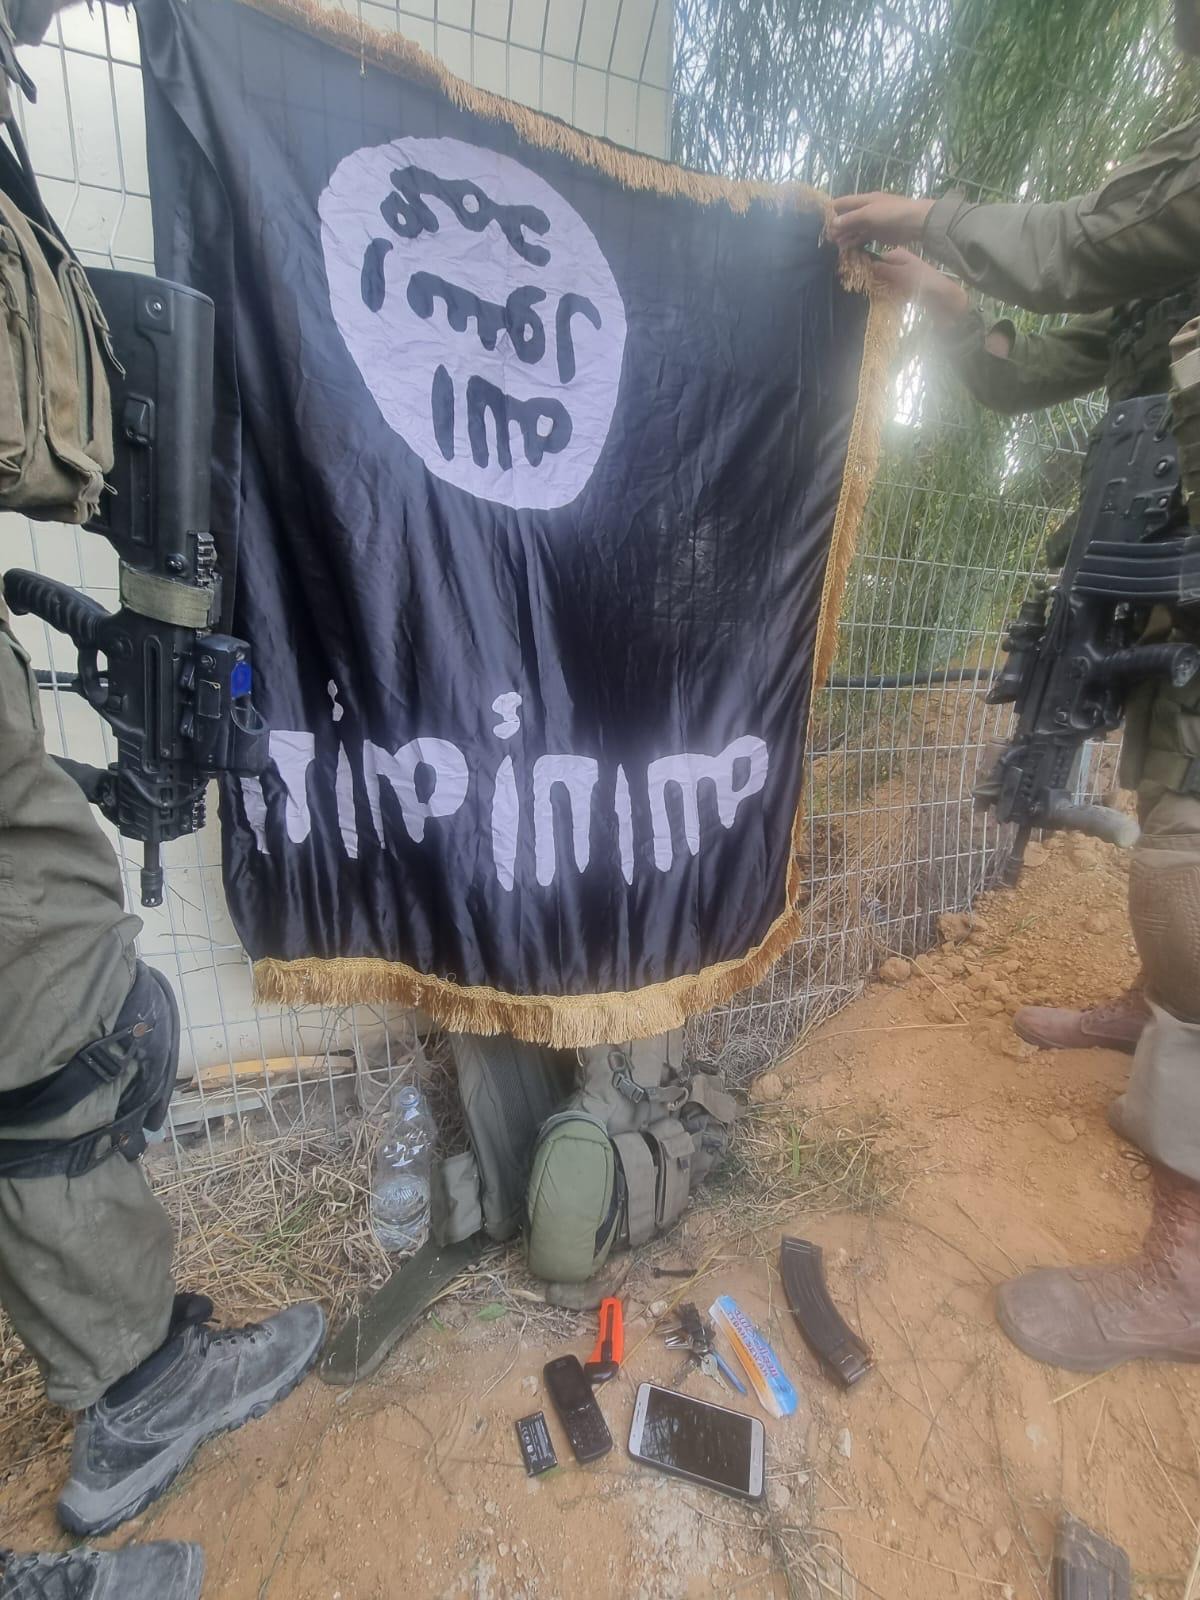 דגל דאע"ש בין הציוד של מחבלי חמאס